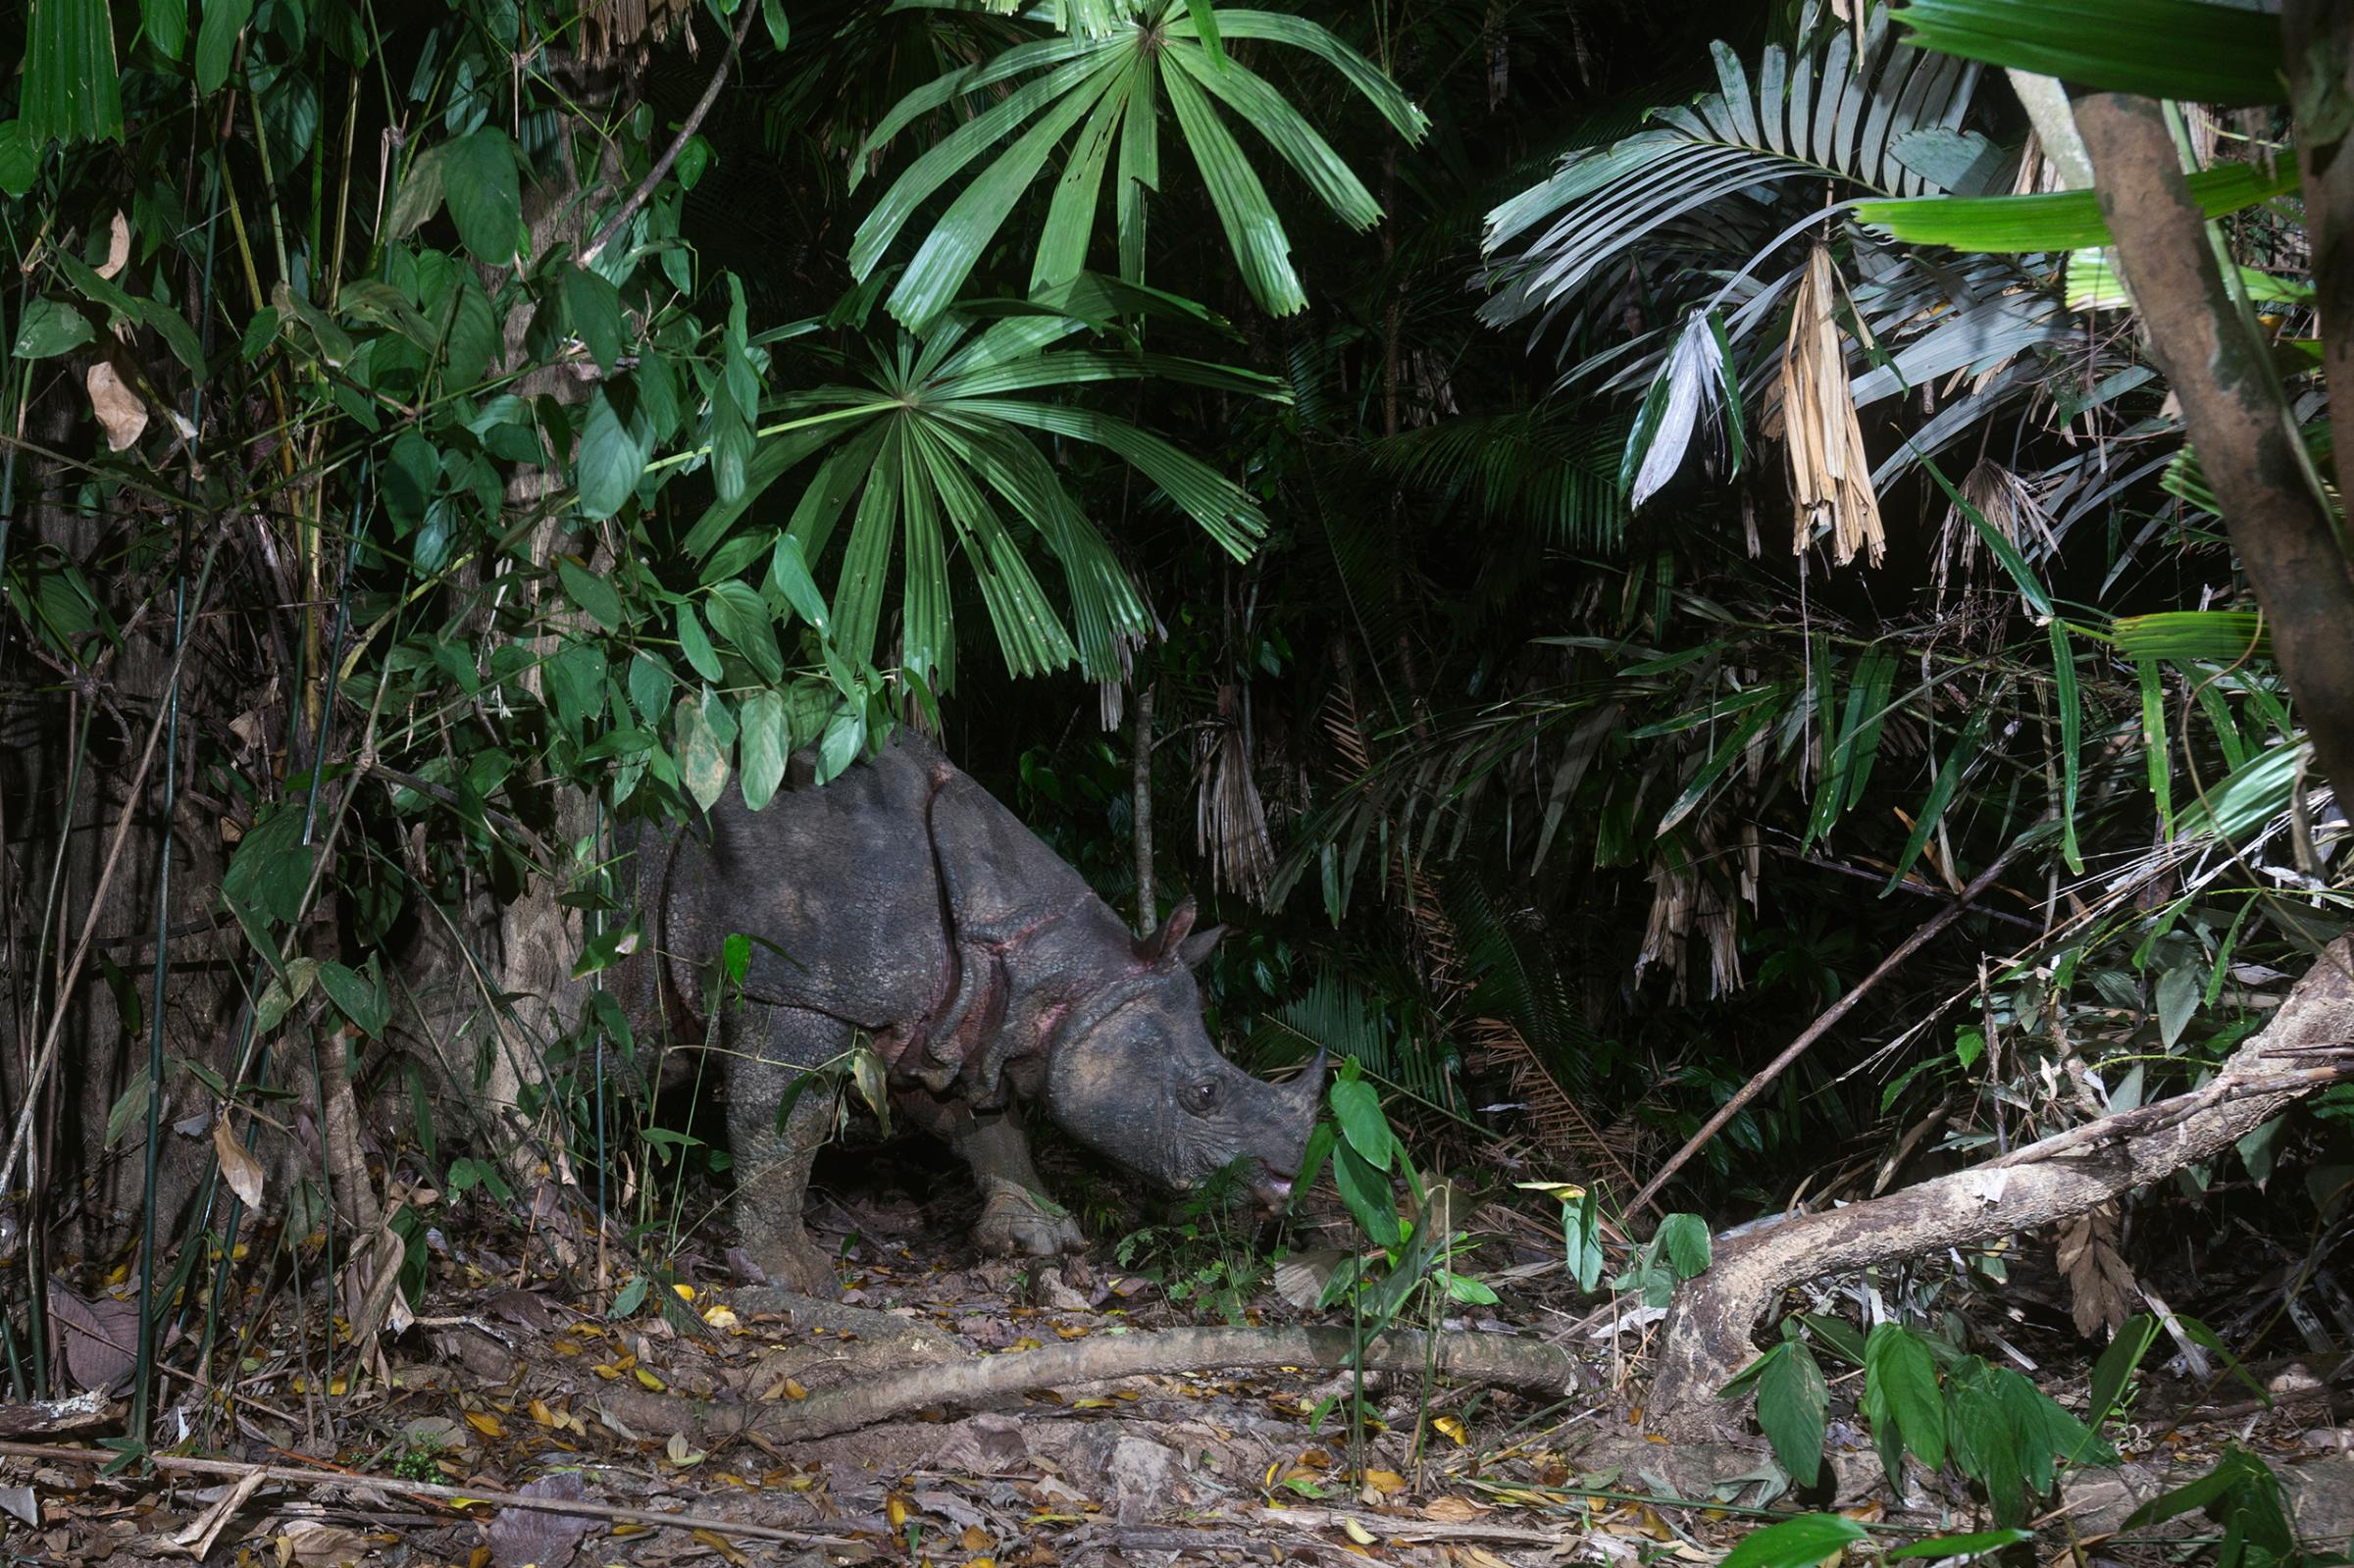 Javan Rhinoceros (Rhinoceros sondaicus) forages in understory, Ujung Kulon National Park, Indonesia